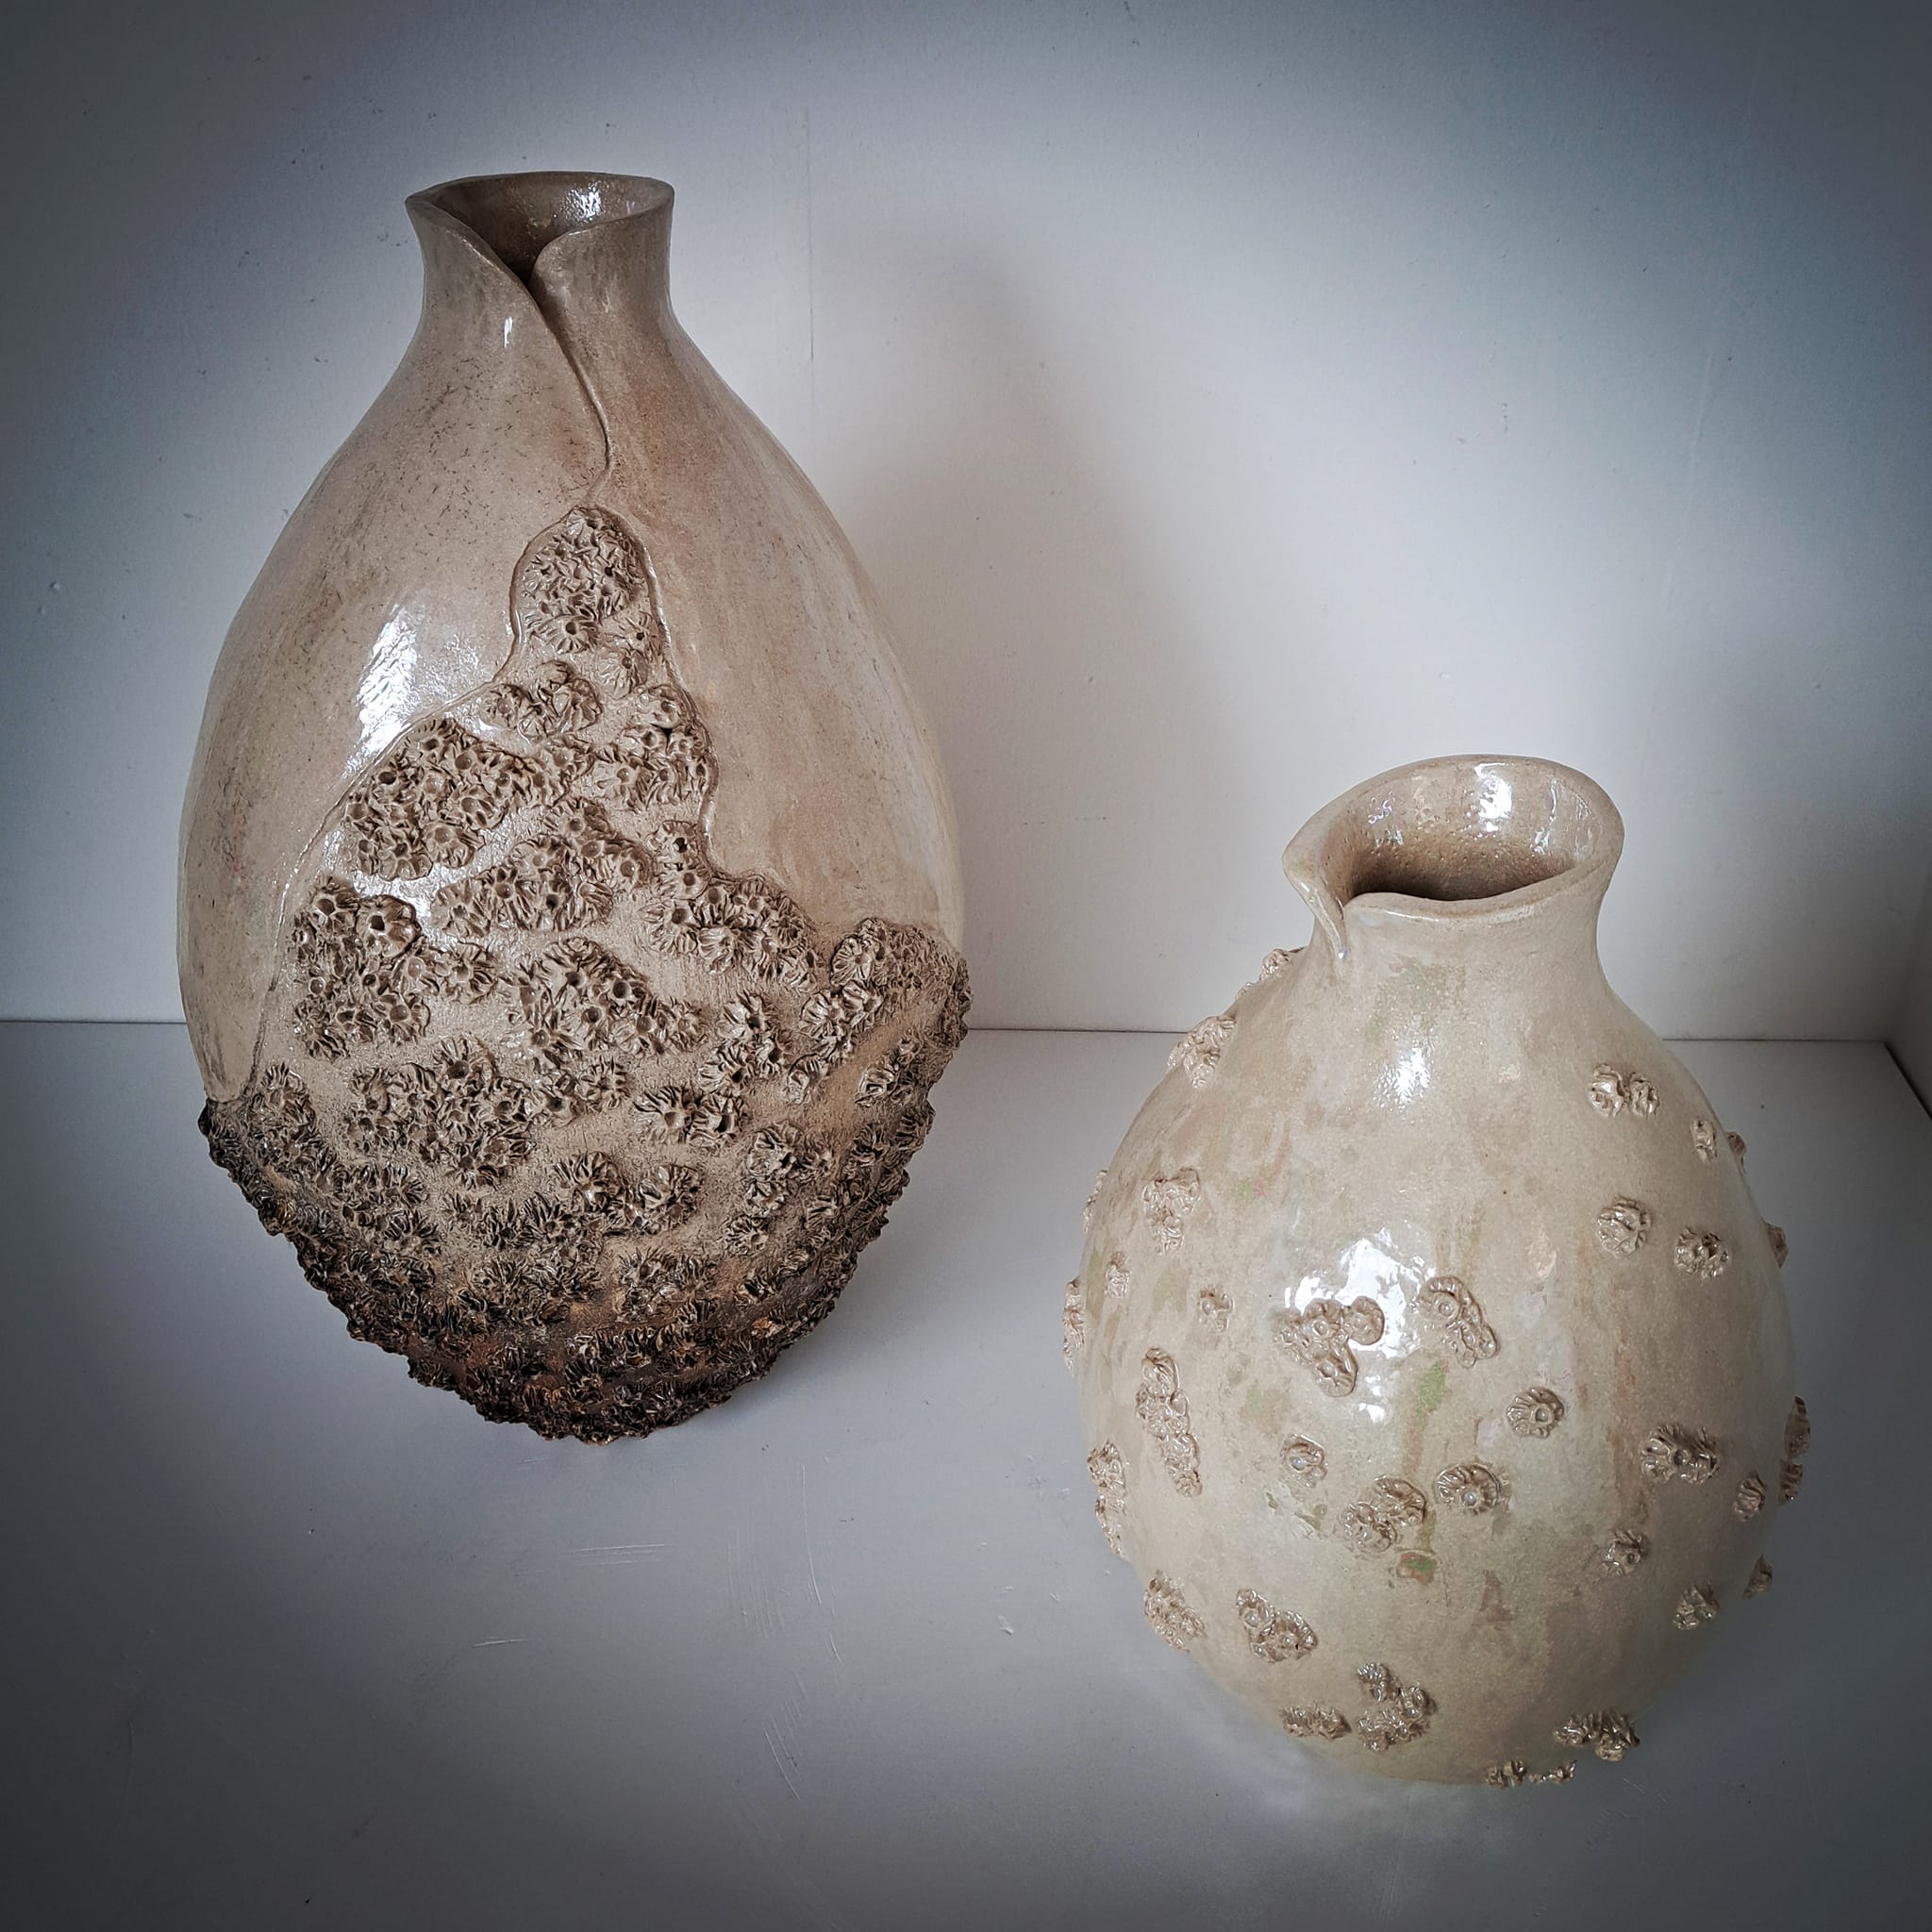 Ceramics from Kentish sculptors Pam Clubb & Gillian Lamb